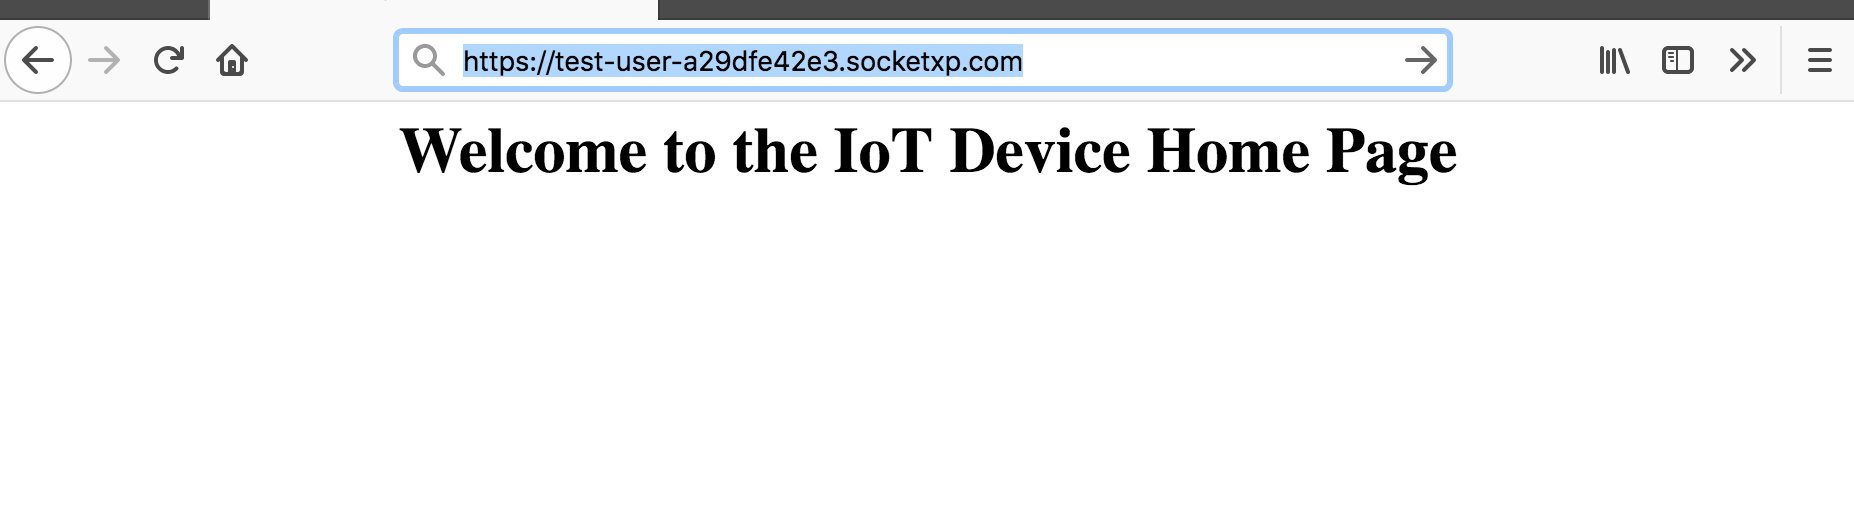 IoT Remote Web Server Access